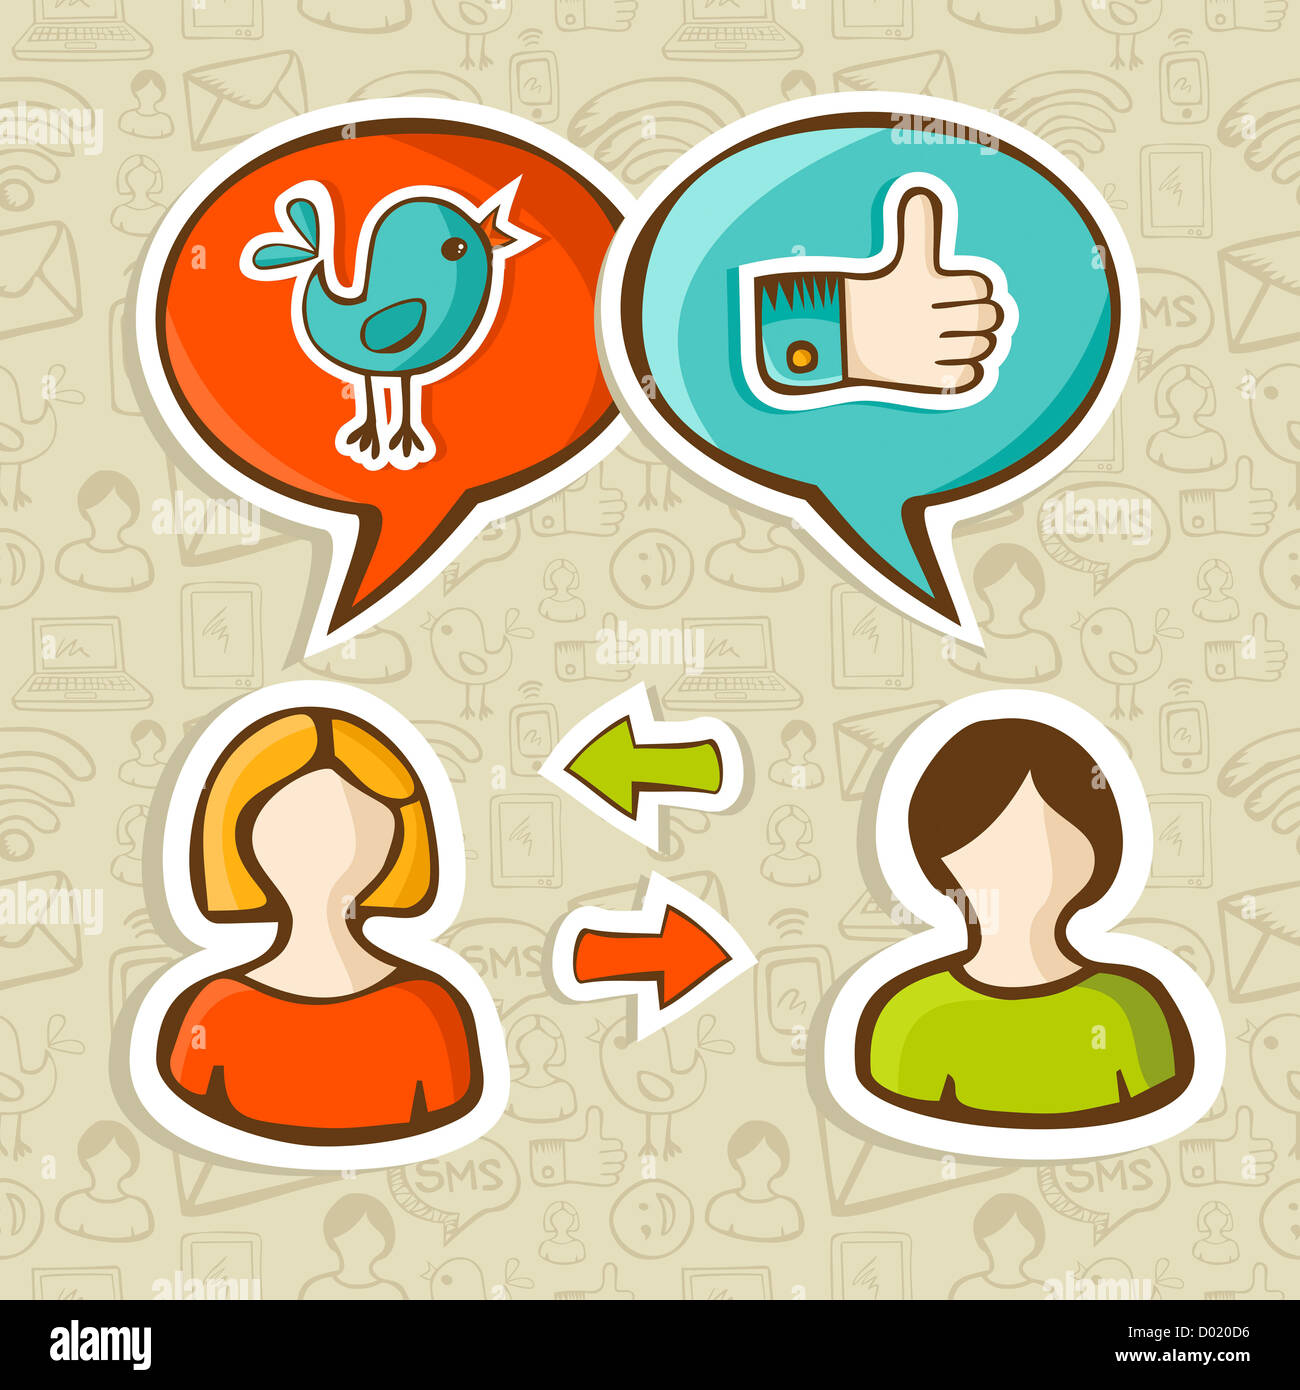 Social media network twitter e facebook come icone nel discorso bolla Connecting people. Illustrazione Vettoriale stratificata per una facile manipolazione e colorazione personalizzata. Foto Stock